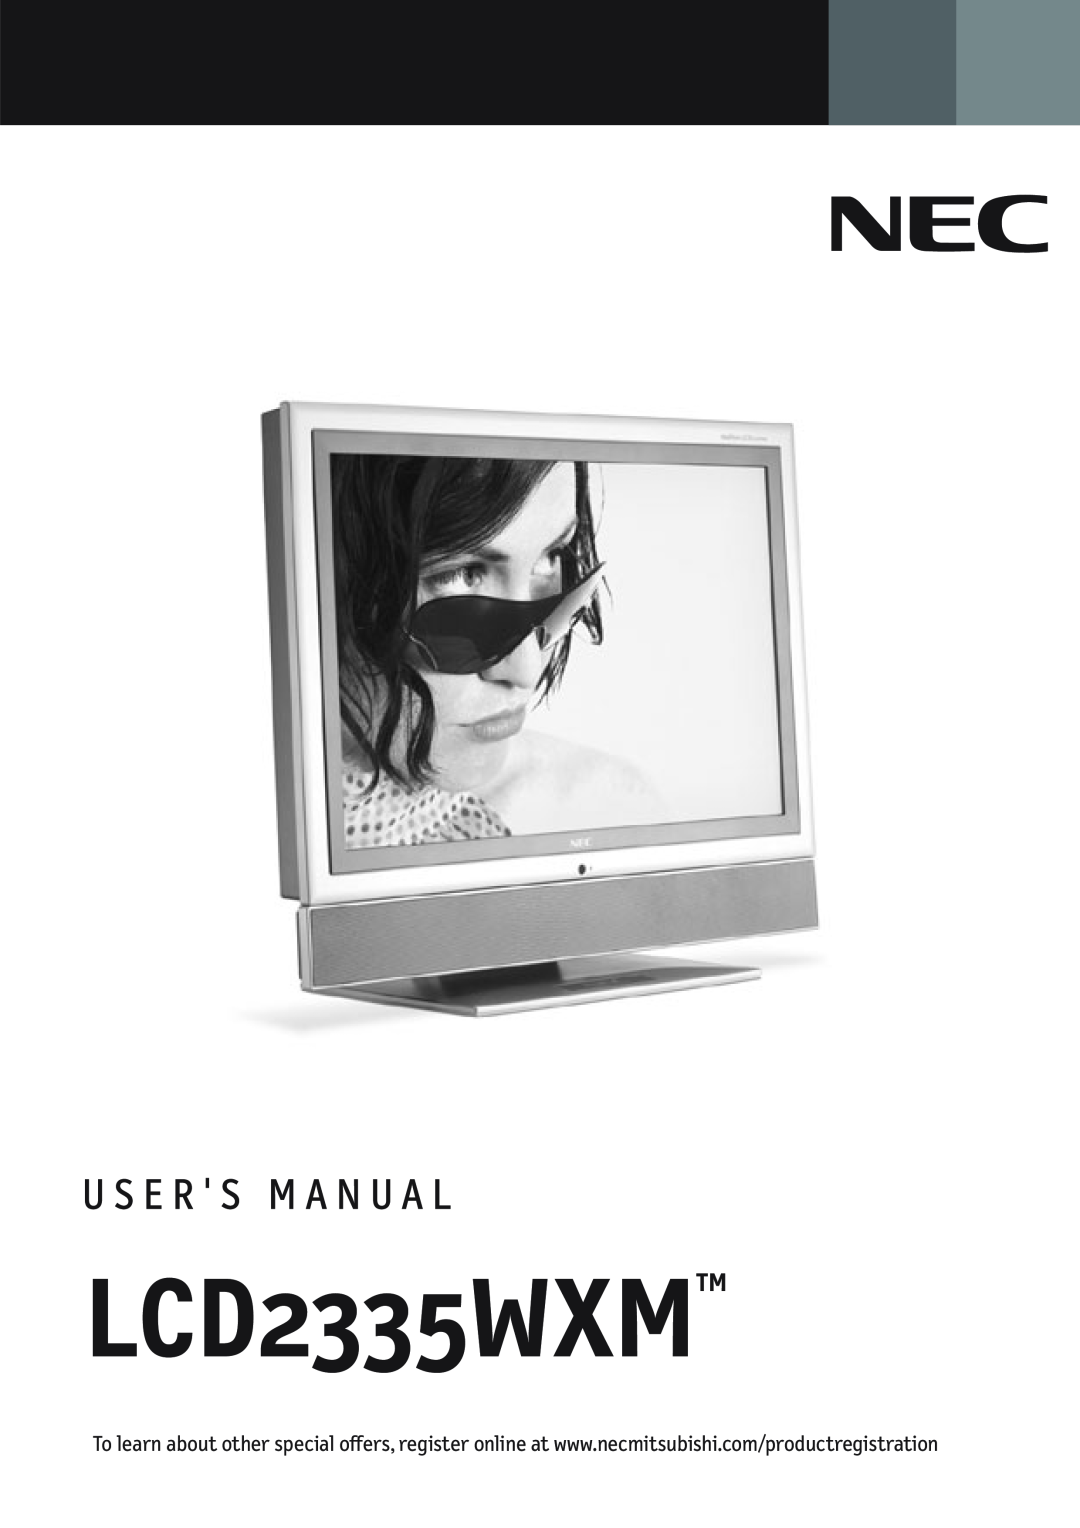 NEC L234GC manual LCD2335WXMTM 